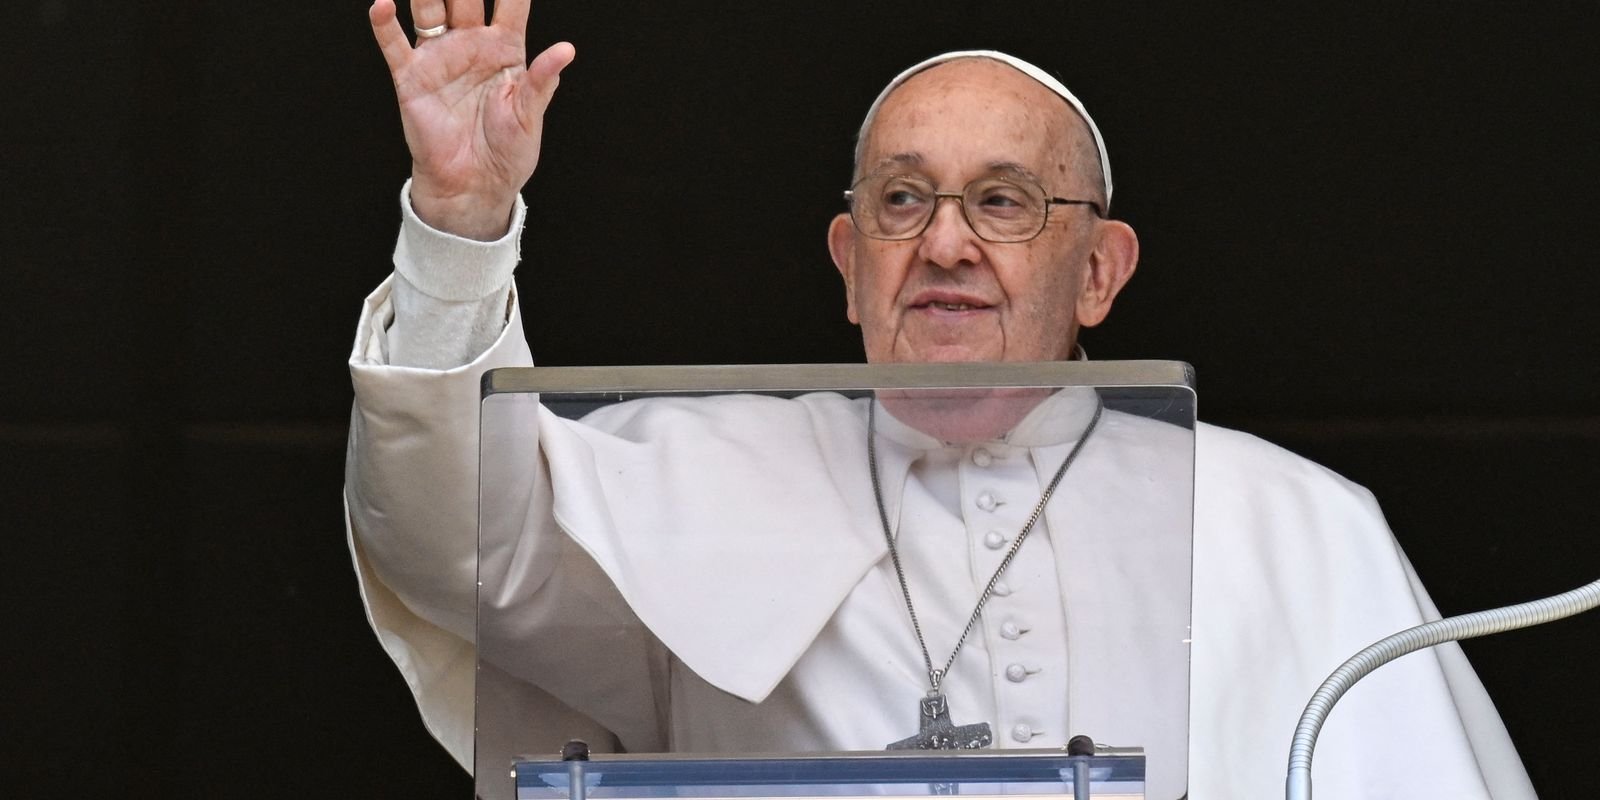 Papa faz crítica a armas e preservativos em conferência pró-natalidade